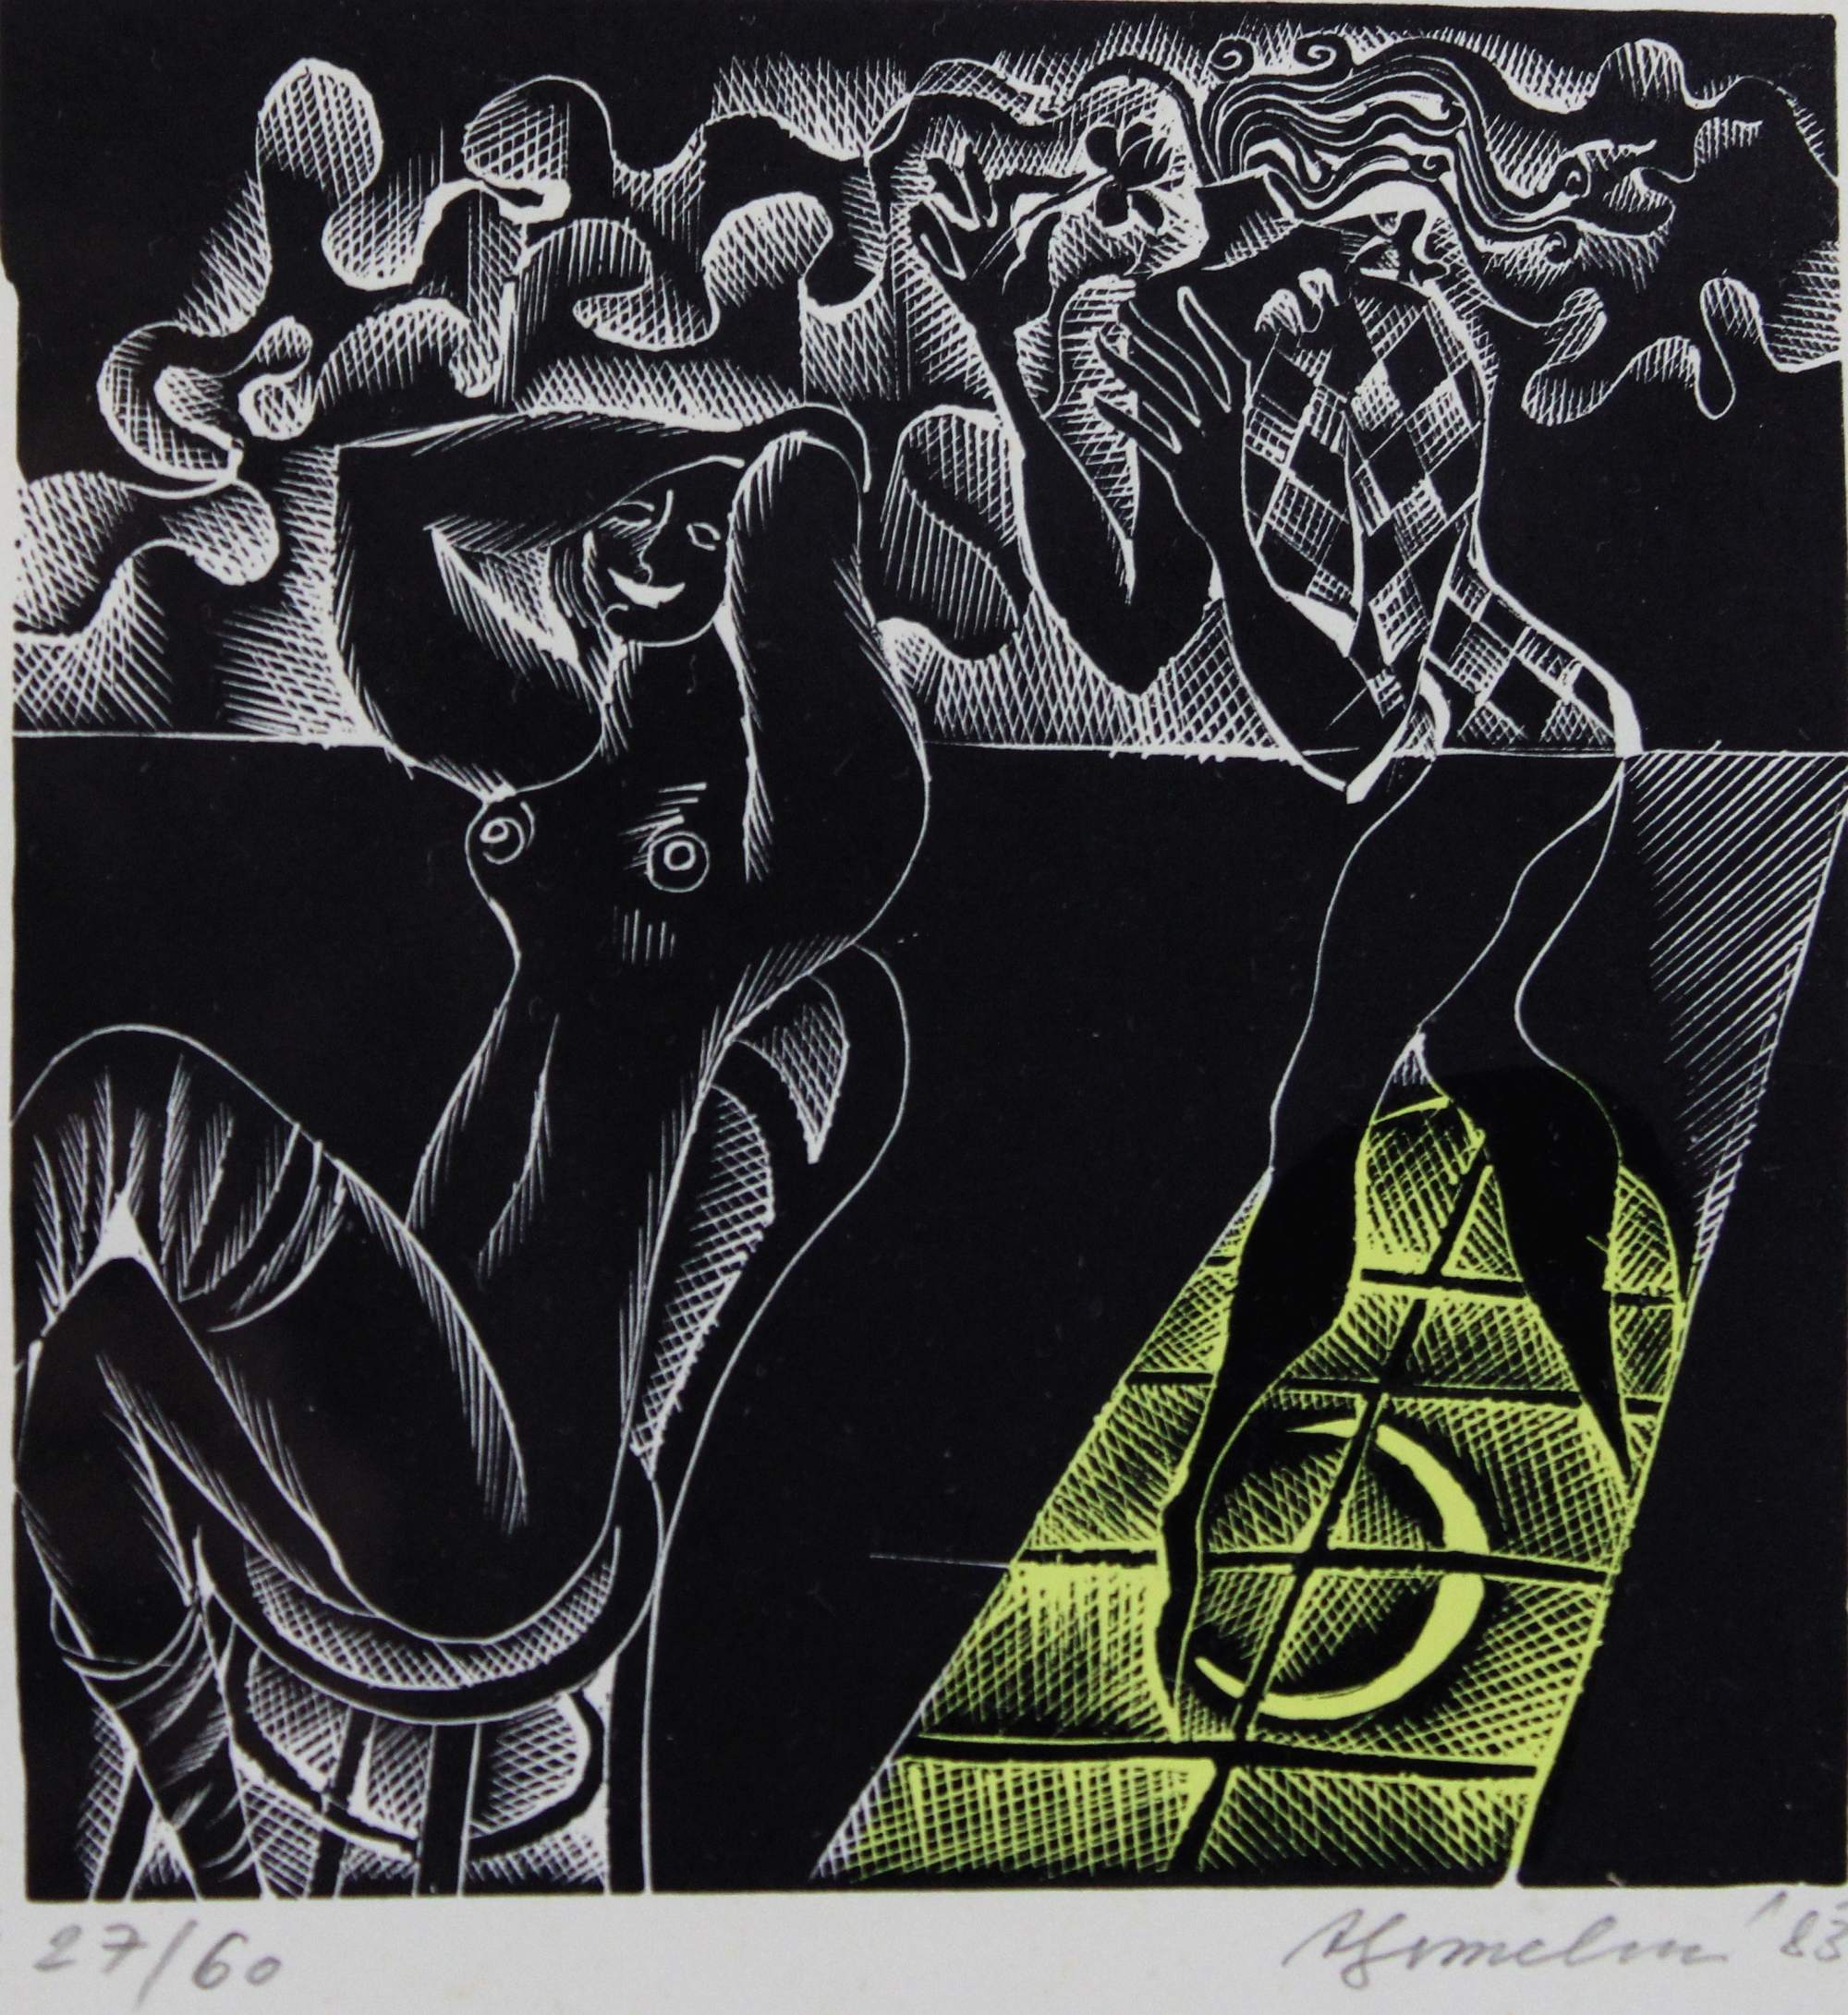 Unbekannter Künstler, Abstrakter Akt, 1983, Linoldruck, Auflage: II. 27/60